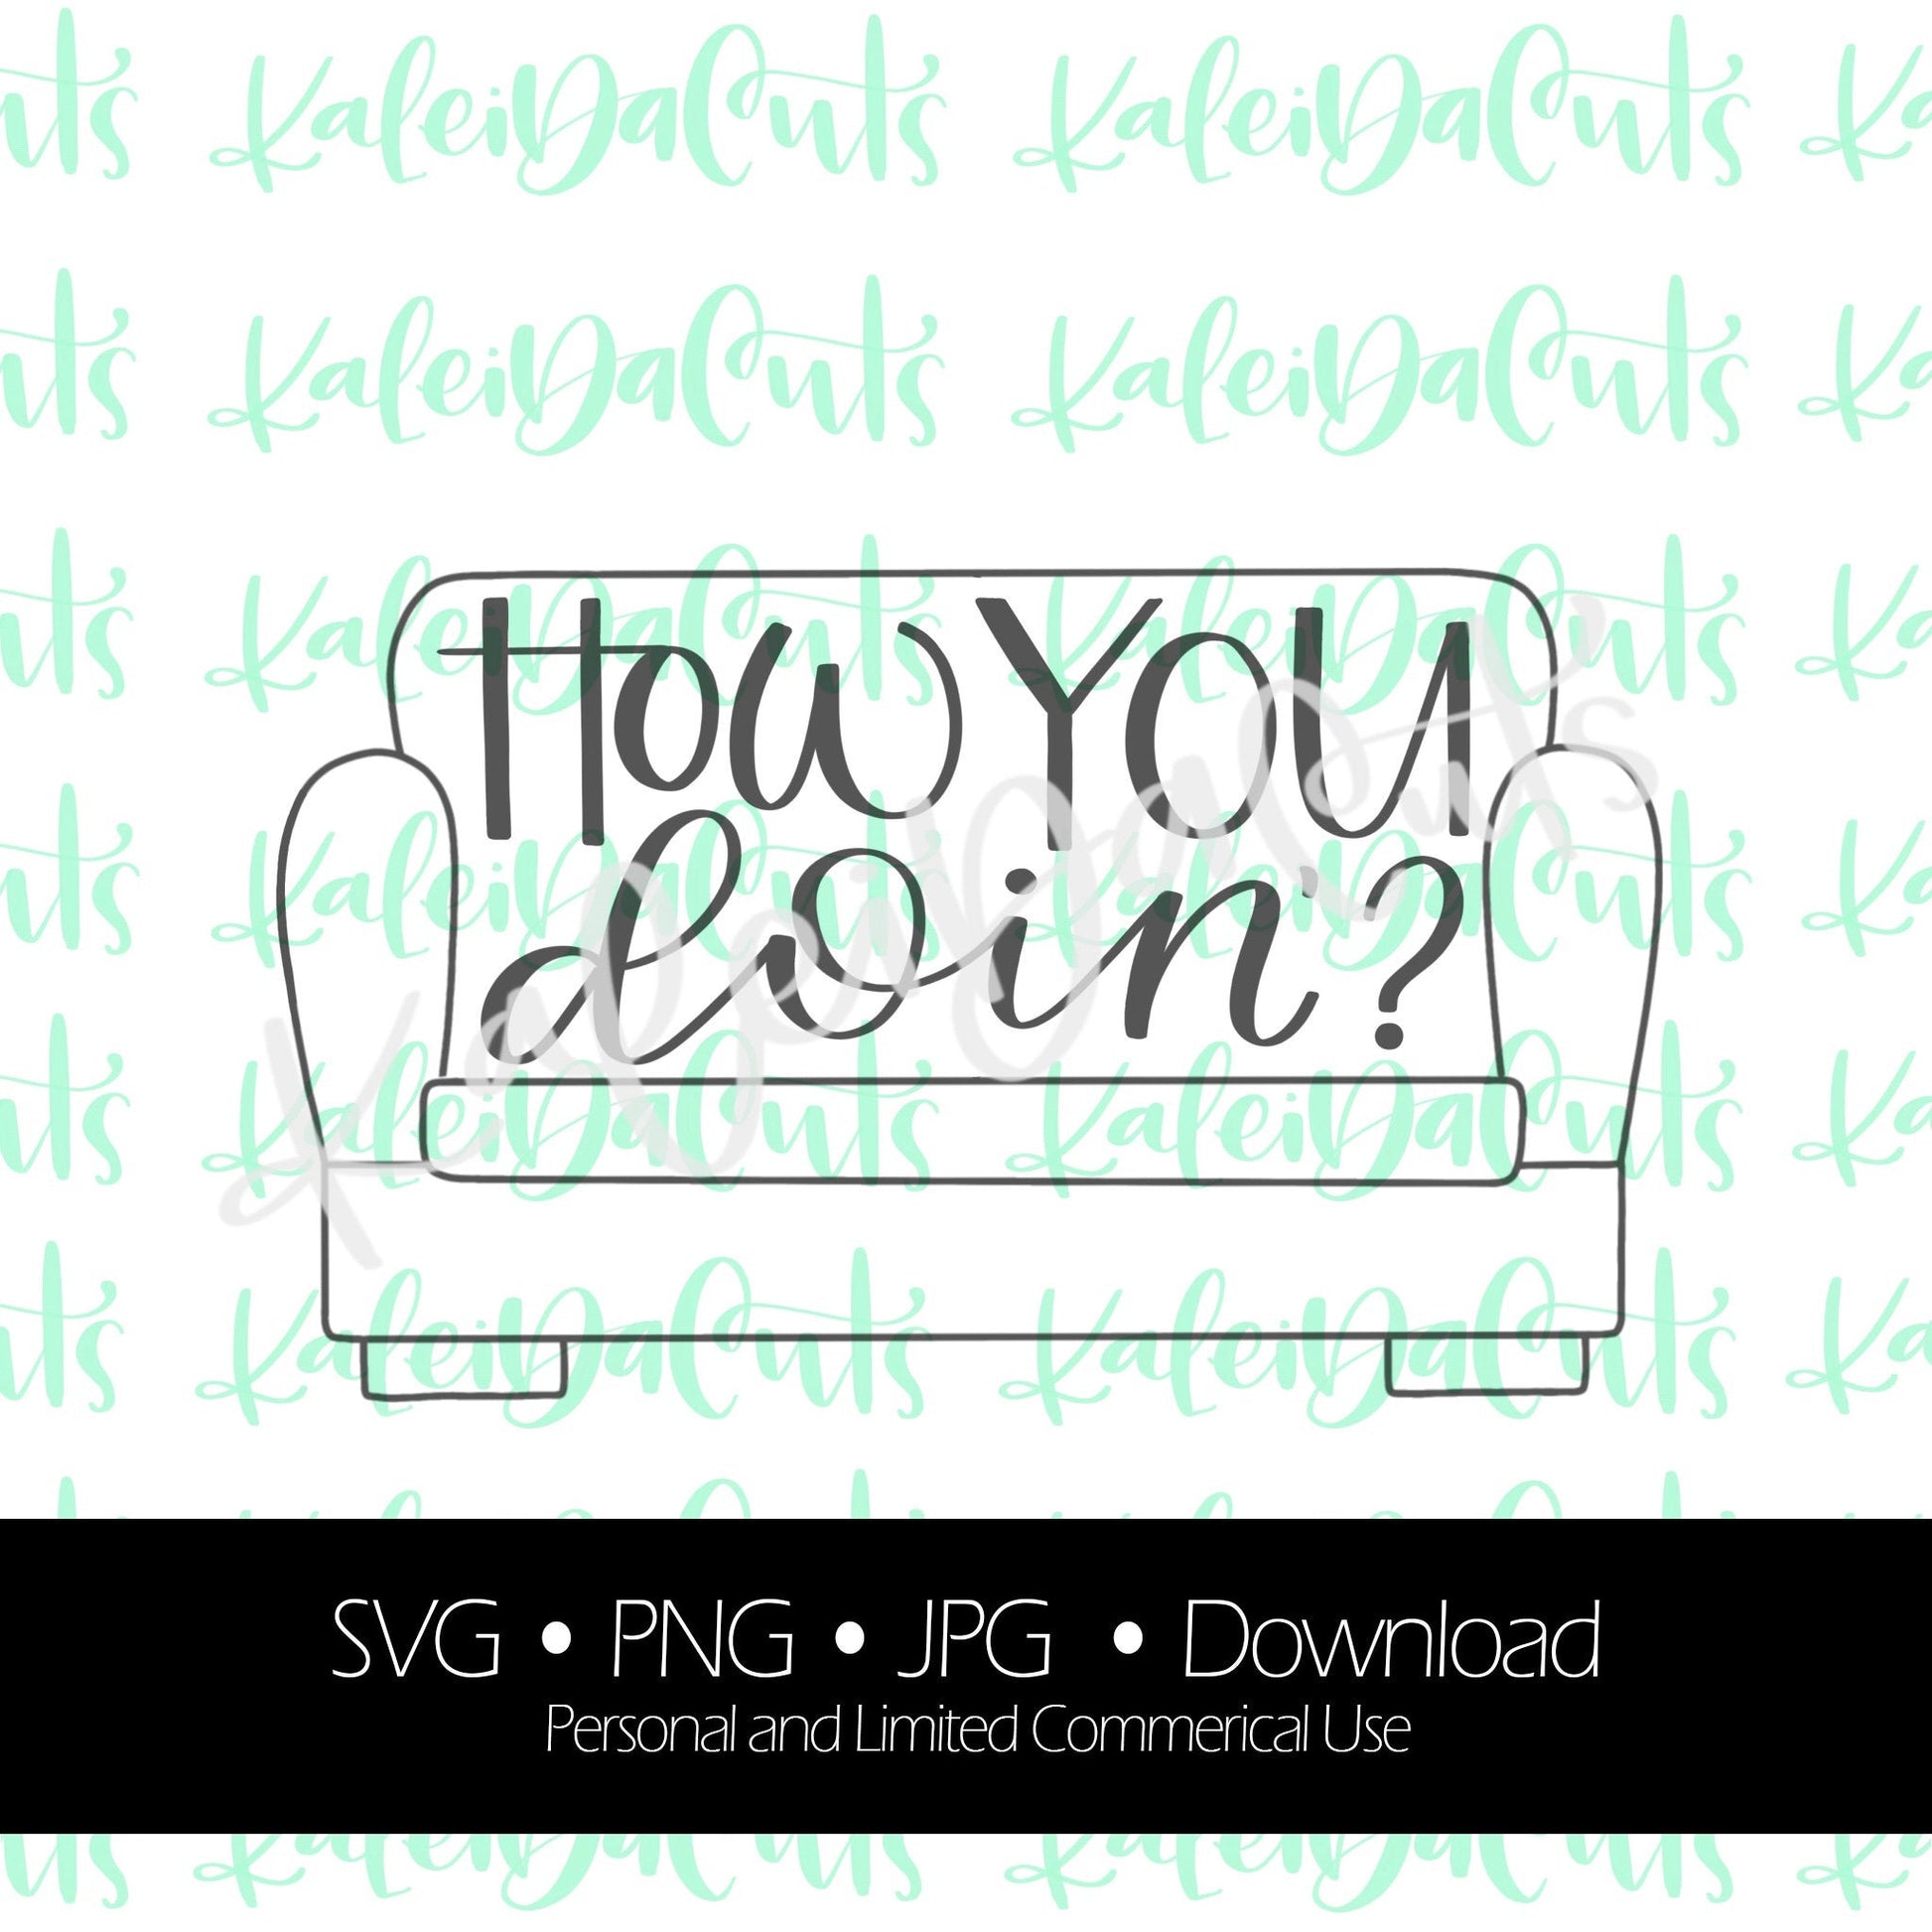 How You Doin' Lettering. SVG. Digital Download. KaleidaCuts Handlettering.